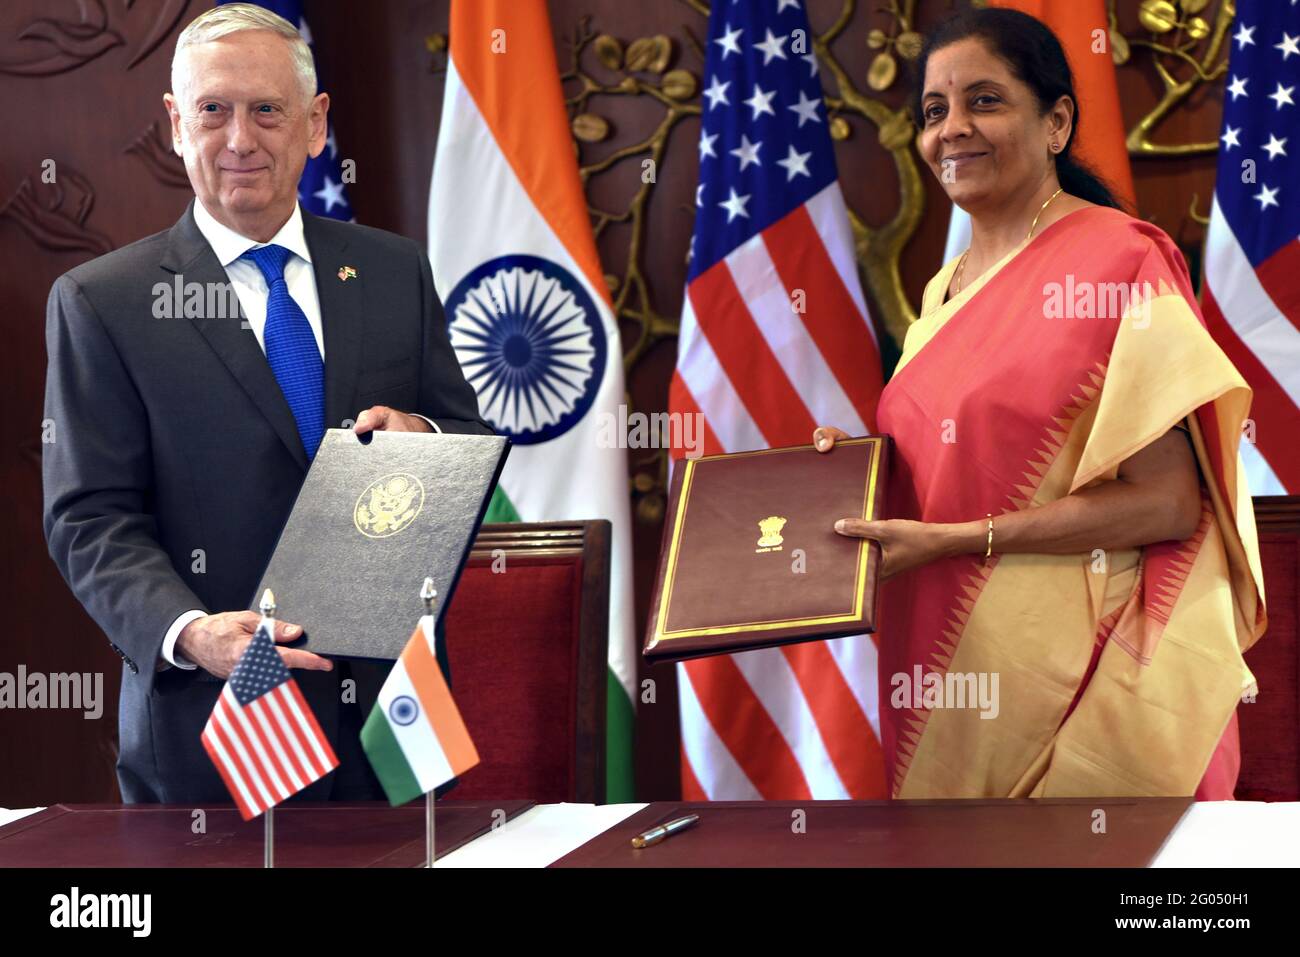 Reportage: Il Segretario della Difesa statunitense James N. Mattis e il Ministro della Difesa indiano Nirmala Sitharaman firmano l'accordo di compatibilità e sicurezza delle comunicazioni (COMCASA) tra gli Stati Uniti e l'India, presso il Ministero degli Affari Esteri Jawaharlal Nehru Bhawan, New Delhi, India, 6 settembre 2018. L'accordo rafforzerà l'interoperabilità e agevolerà l'accesso dell'India ai sistemi di difesa avanzati. Foto Stock